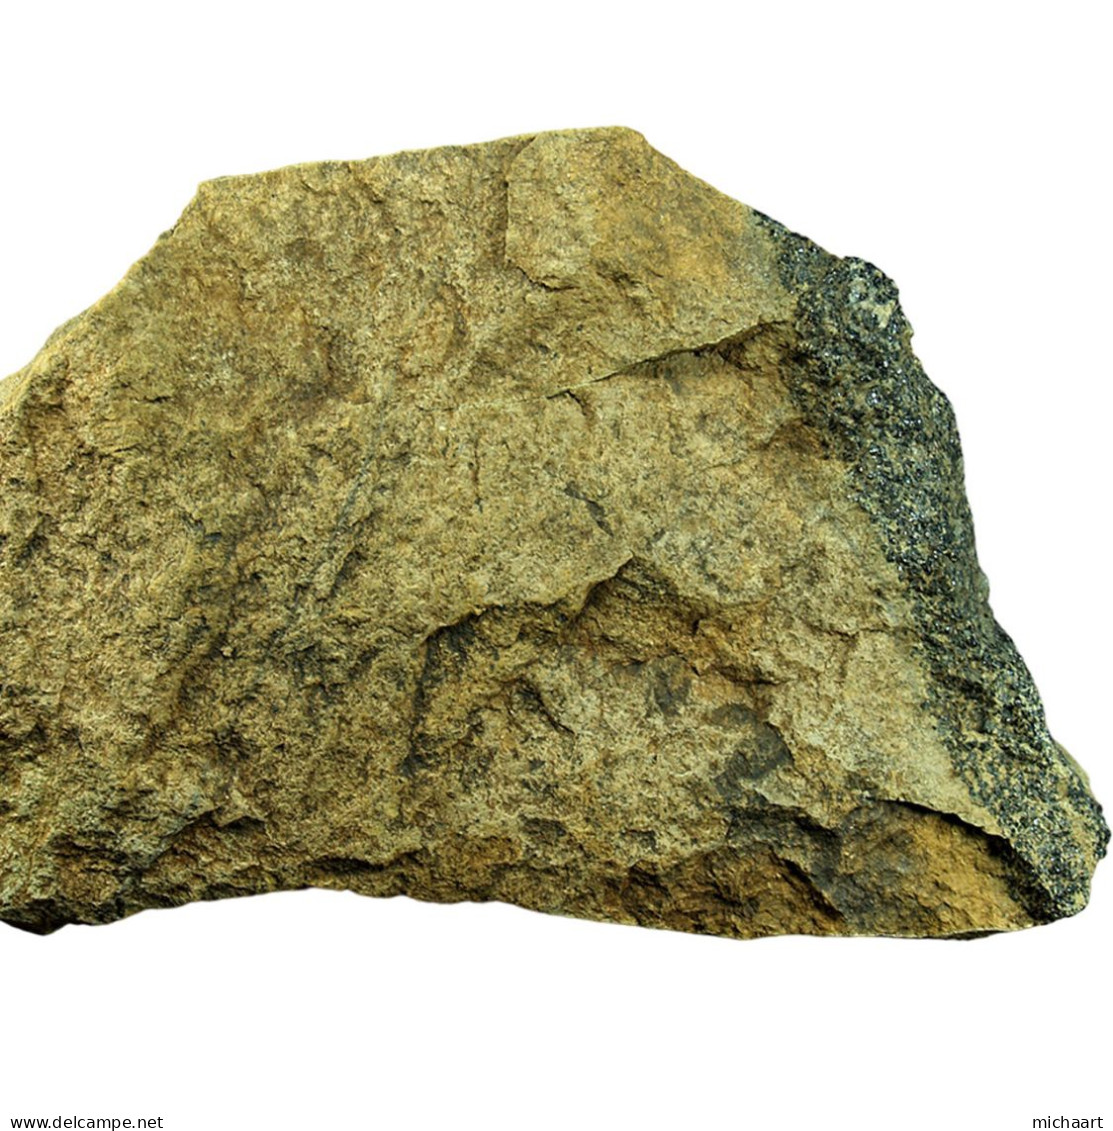 Dunite + Chromite Mineral Rock Specimen 1264g Cyprus Troodos Ophiolite 04398 - Minerals